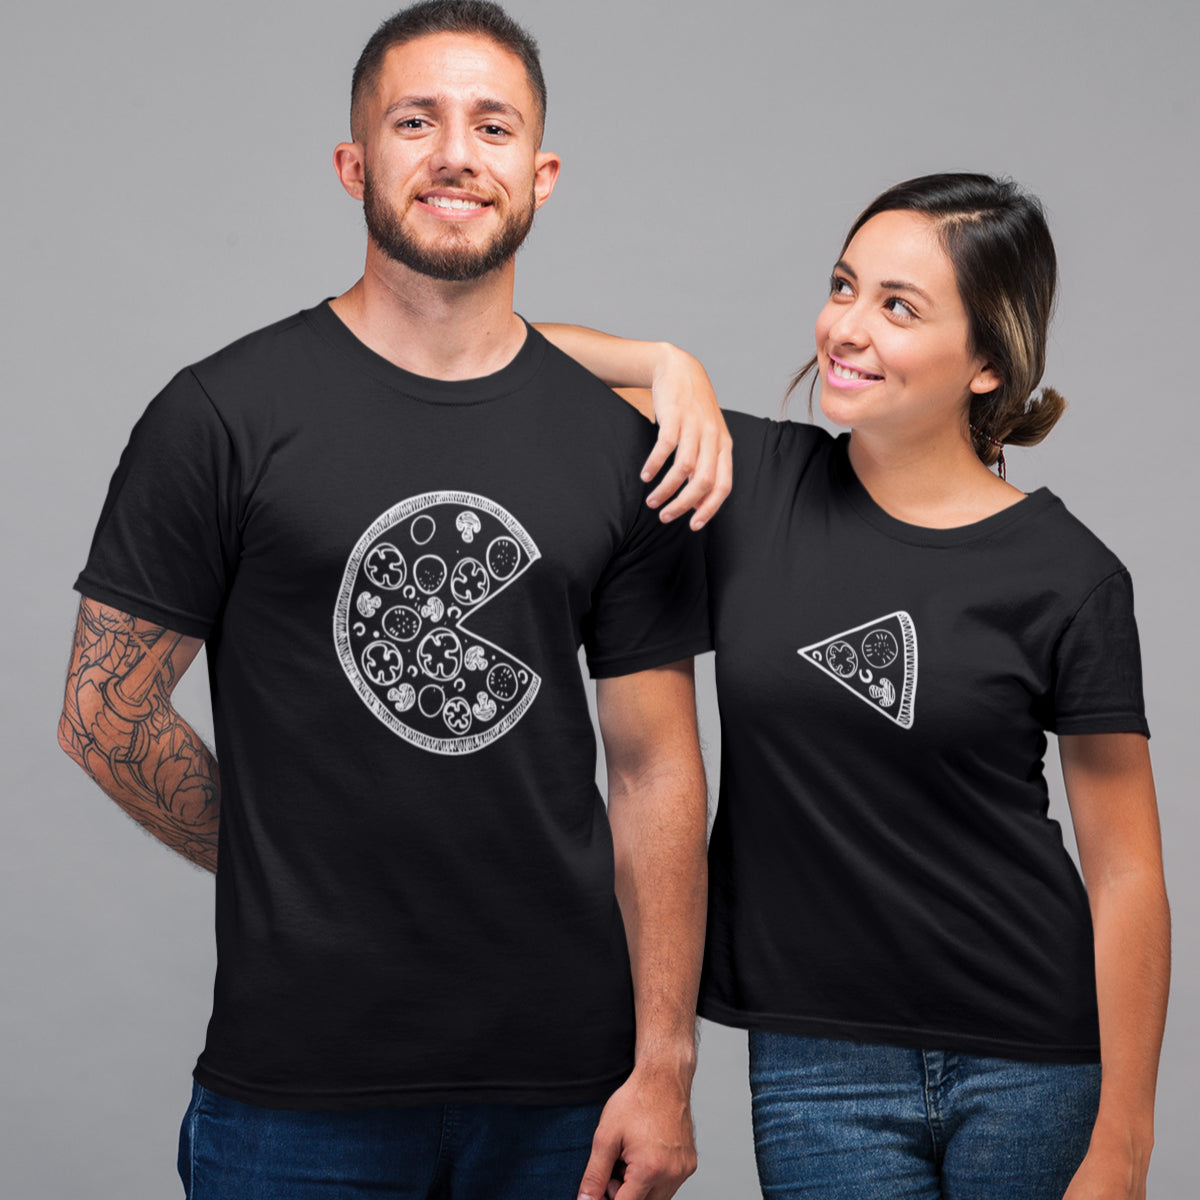 Juodi unisex marškinėliai poroms "PICA“ Vyriškas dizainas